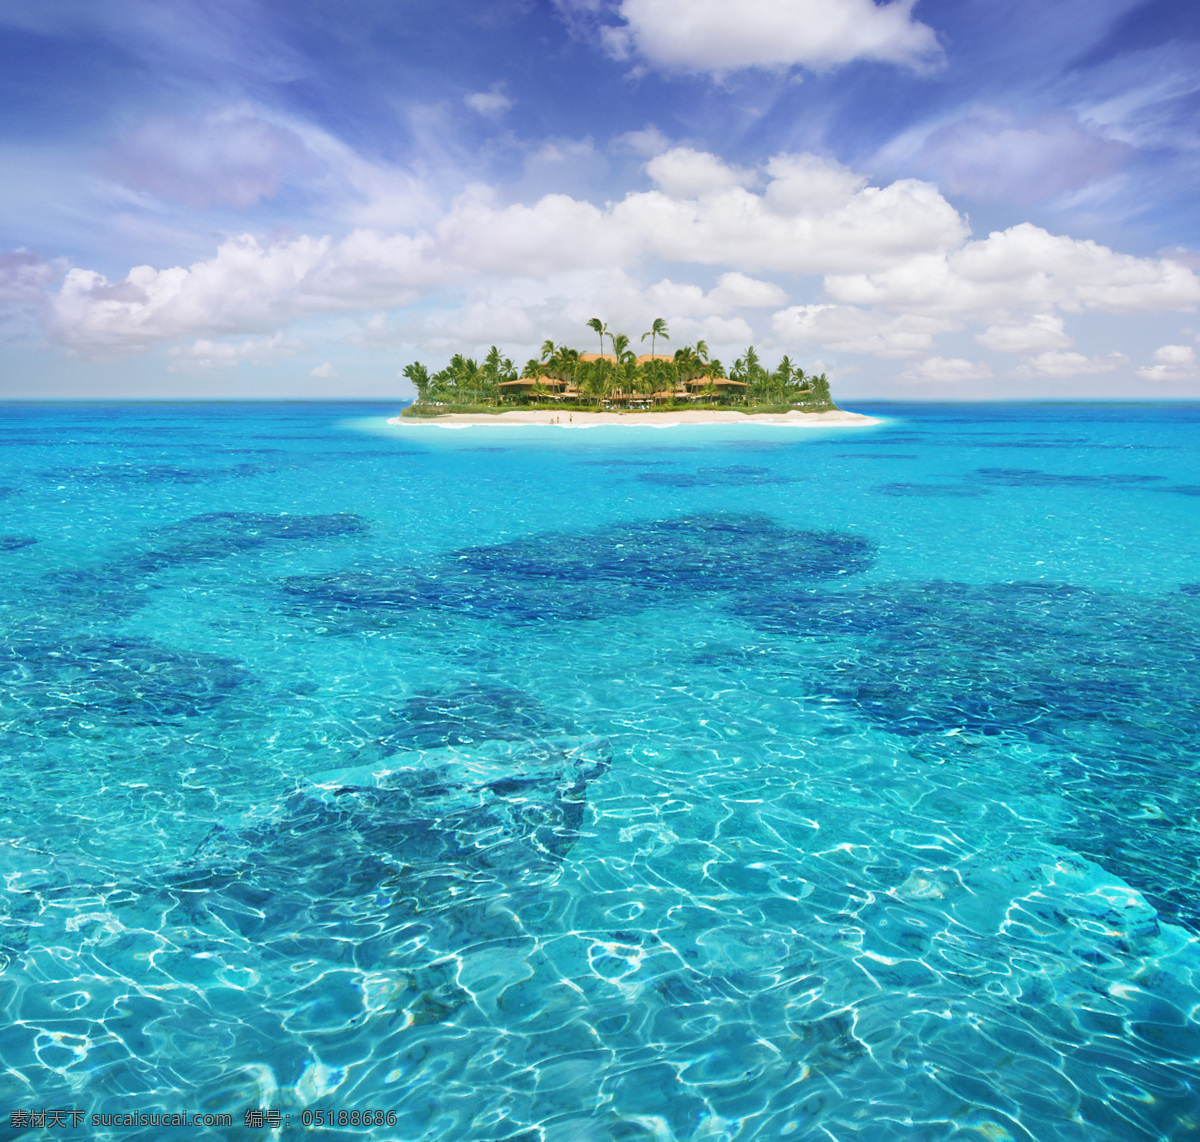 海景风光 海景 海上风光 漂亮的小岛图 小岛 风光 大海 风景 海水 蓝色 高清图片 创意图片 海水蓝天 白云 海天相接 岛屿 自然风光 自然景观